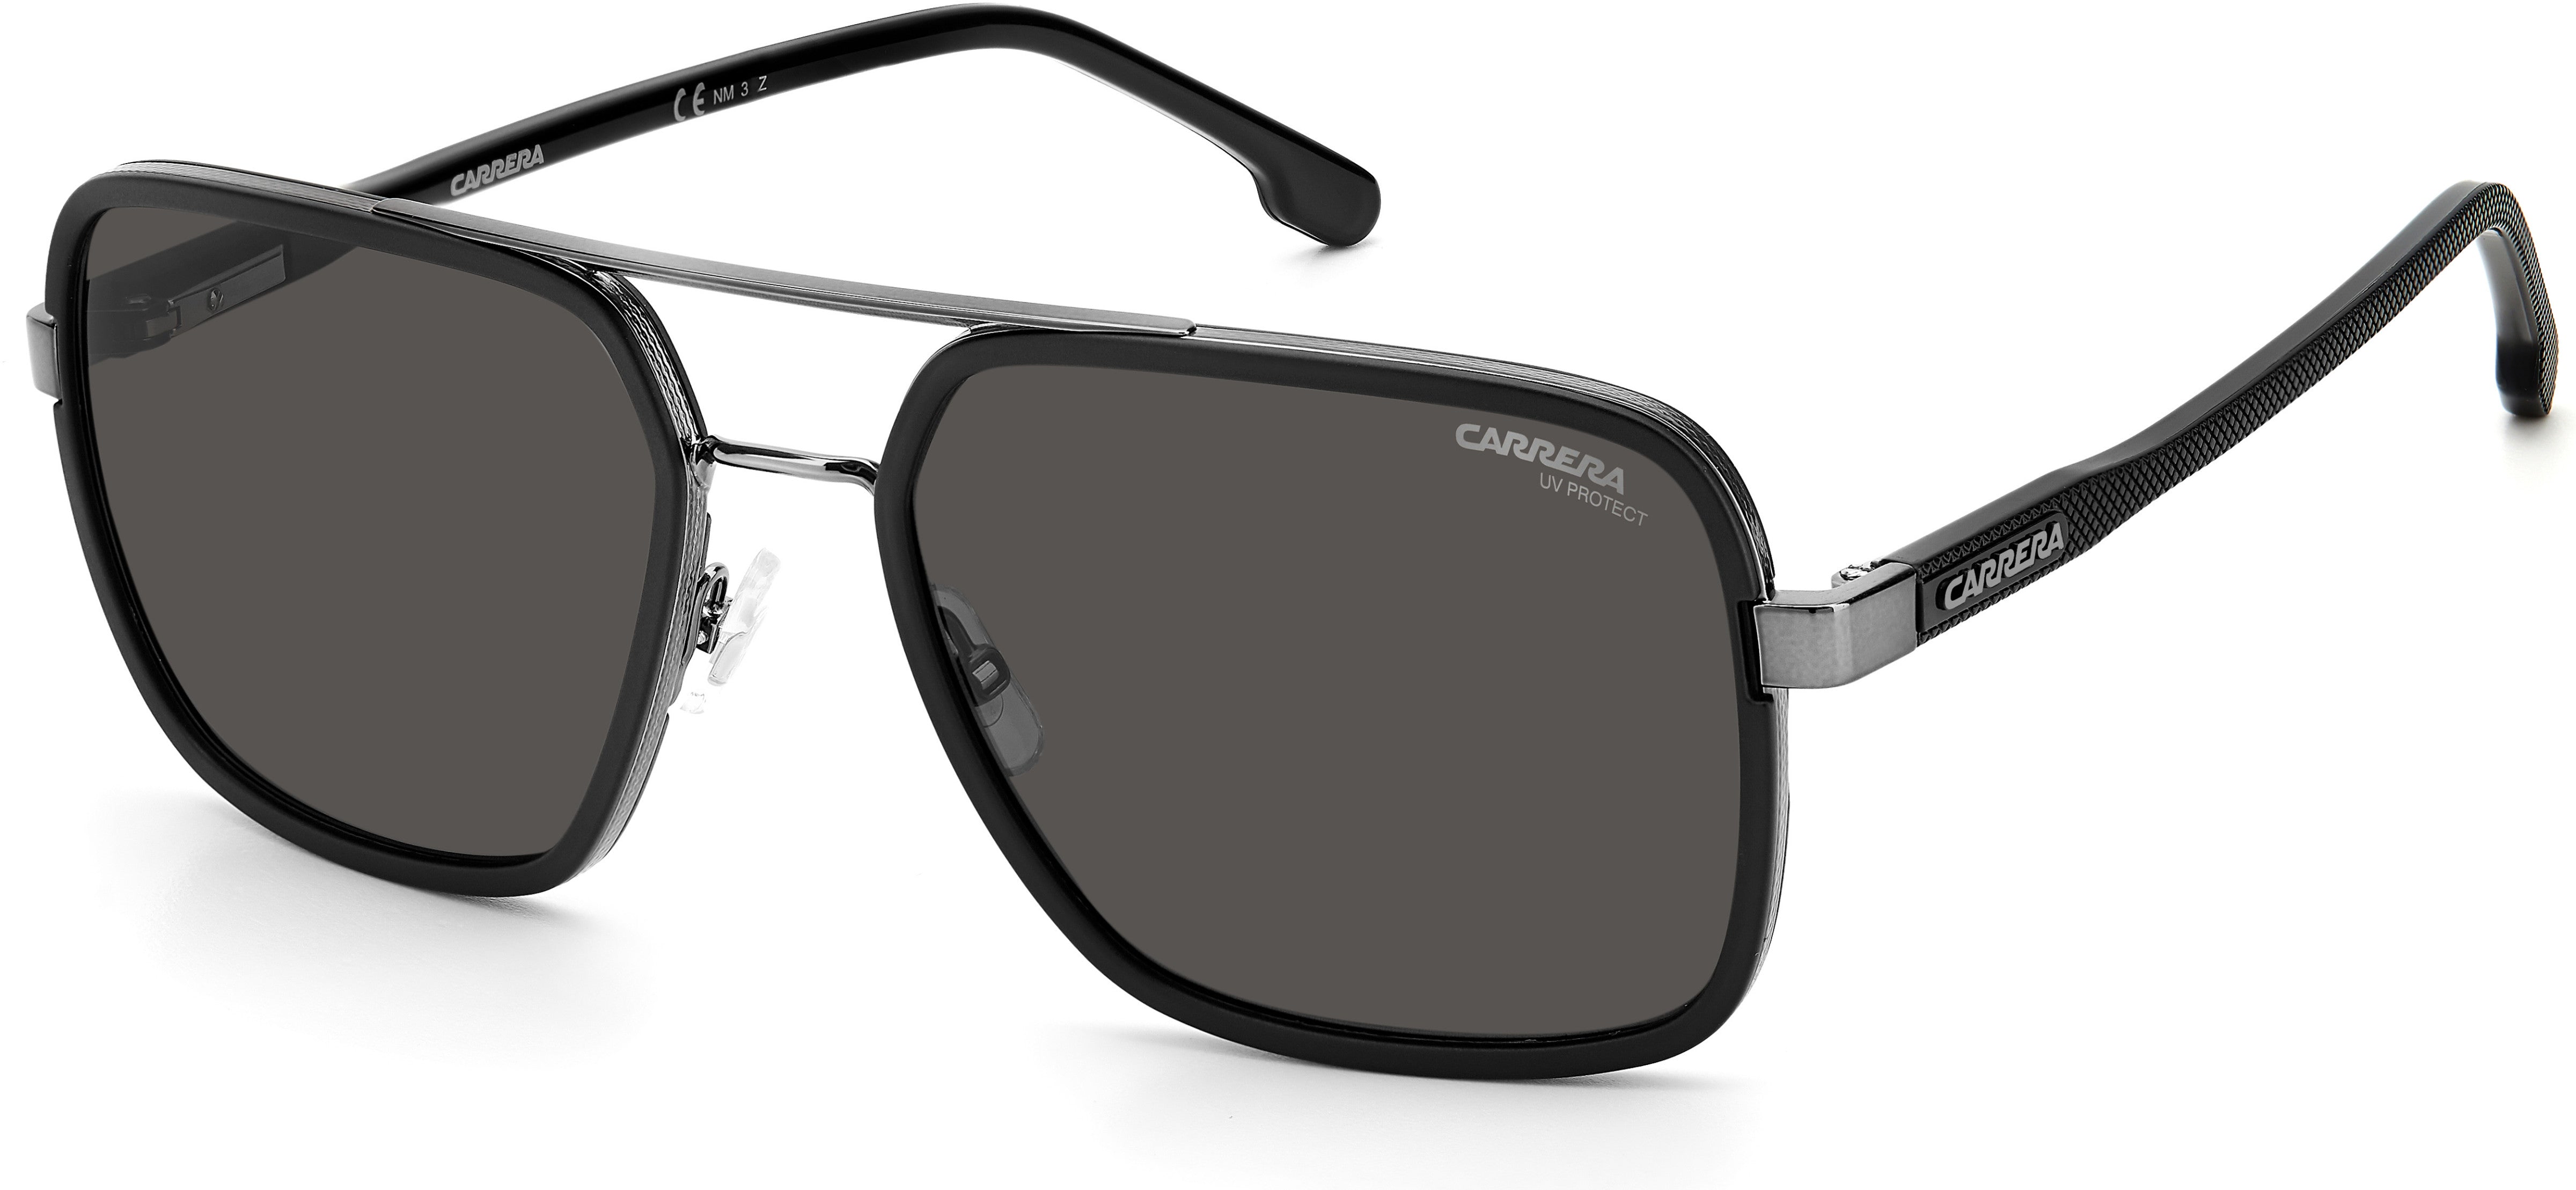  Carrera 256/S Rectangular Sunglasses 0V81-0V81  Dark Ruthenium Black (M9 Gray Pz)